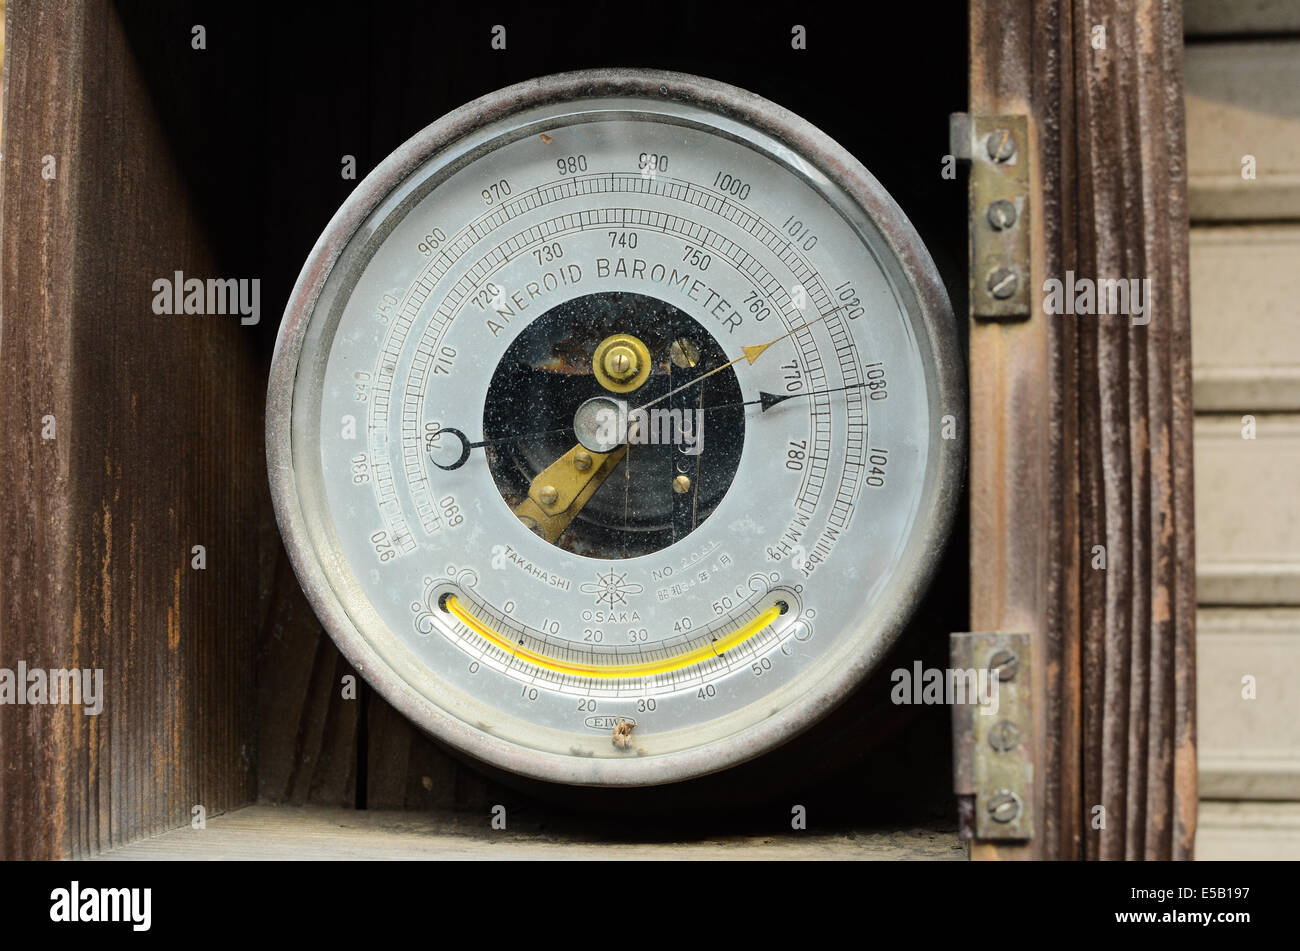 Un baromètre, utilisé en météorologie pour mesurer la pression atmosphérique. Banque D'Images